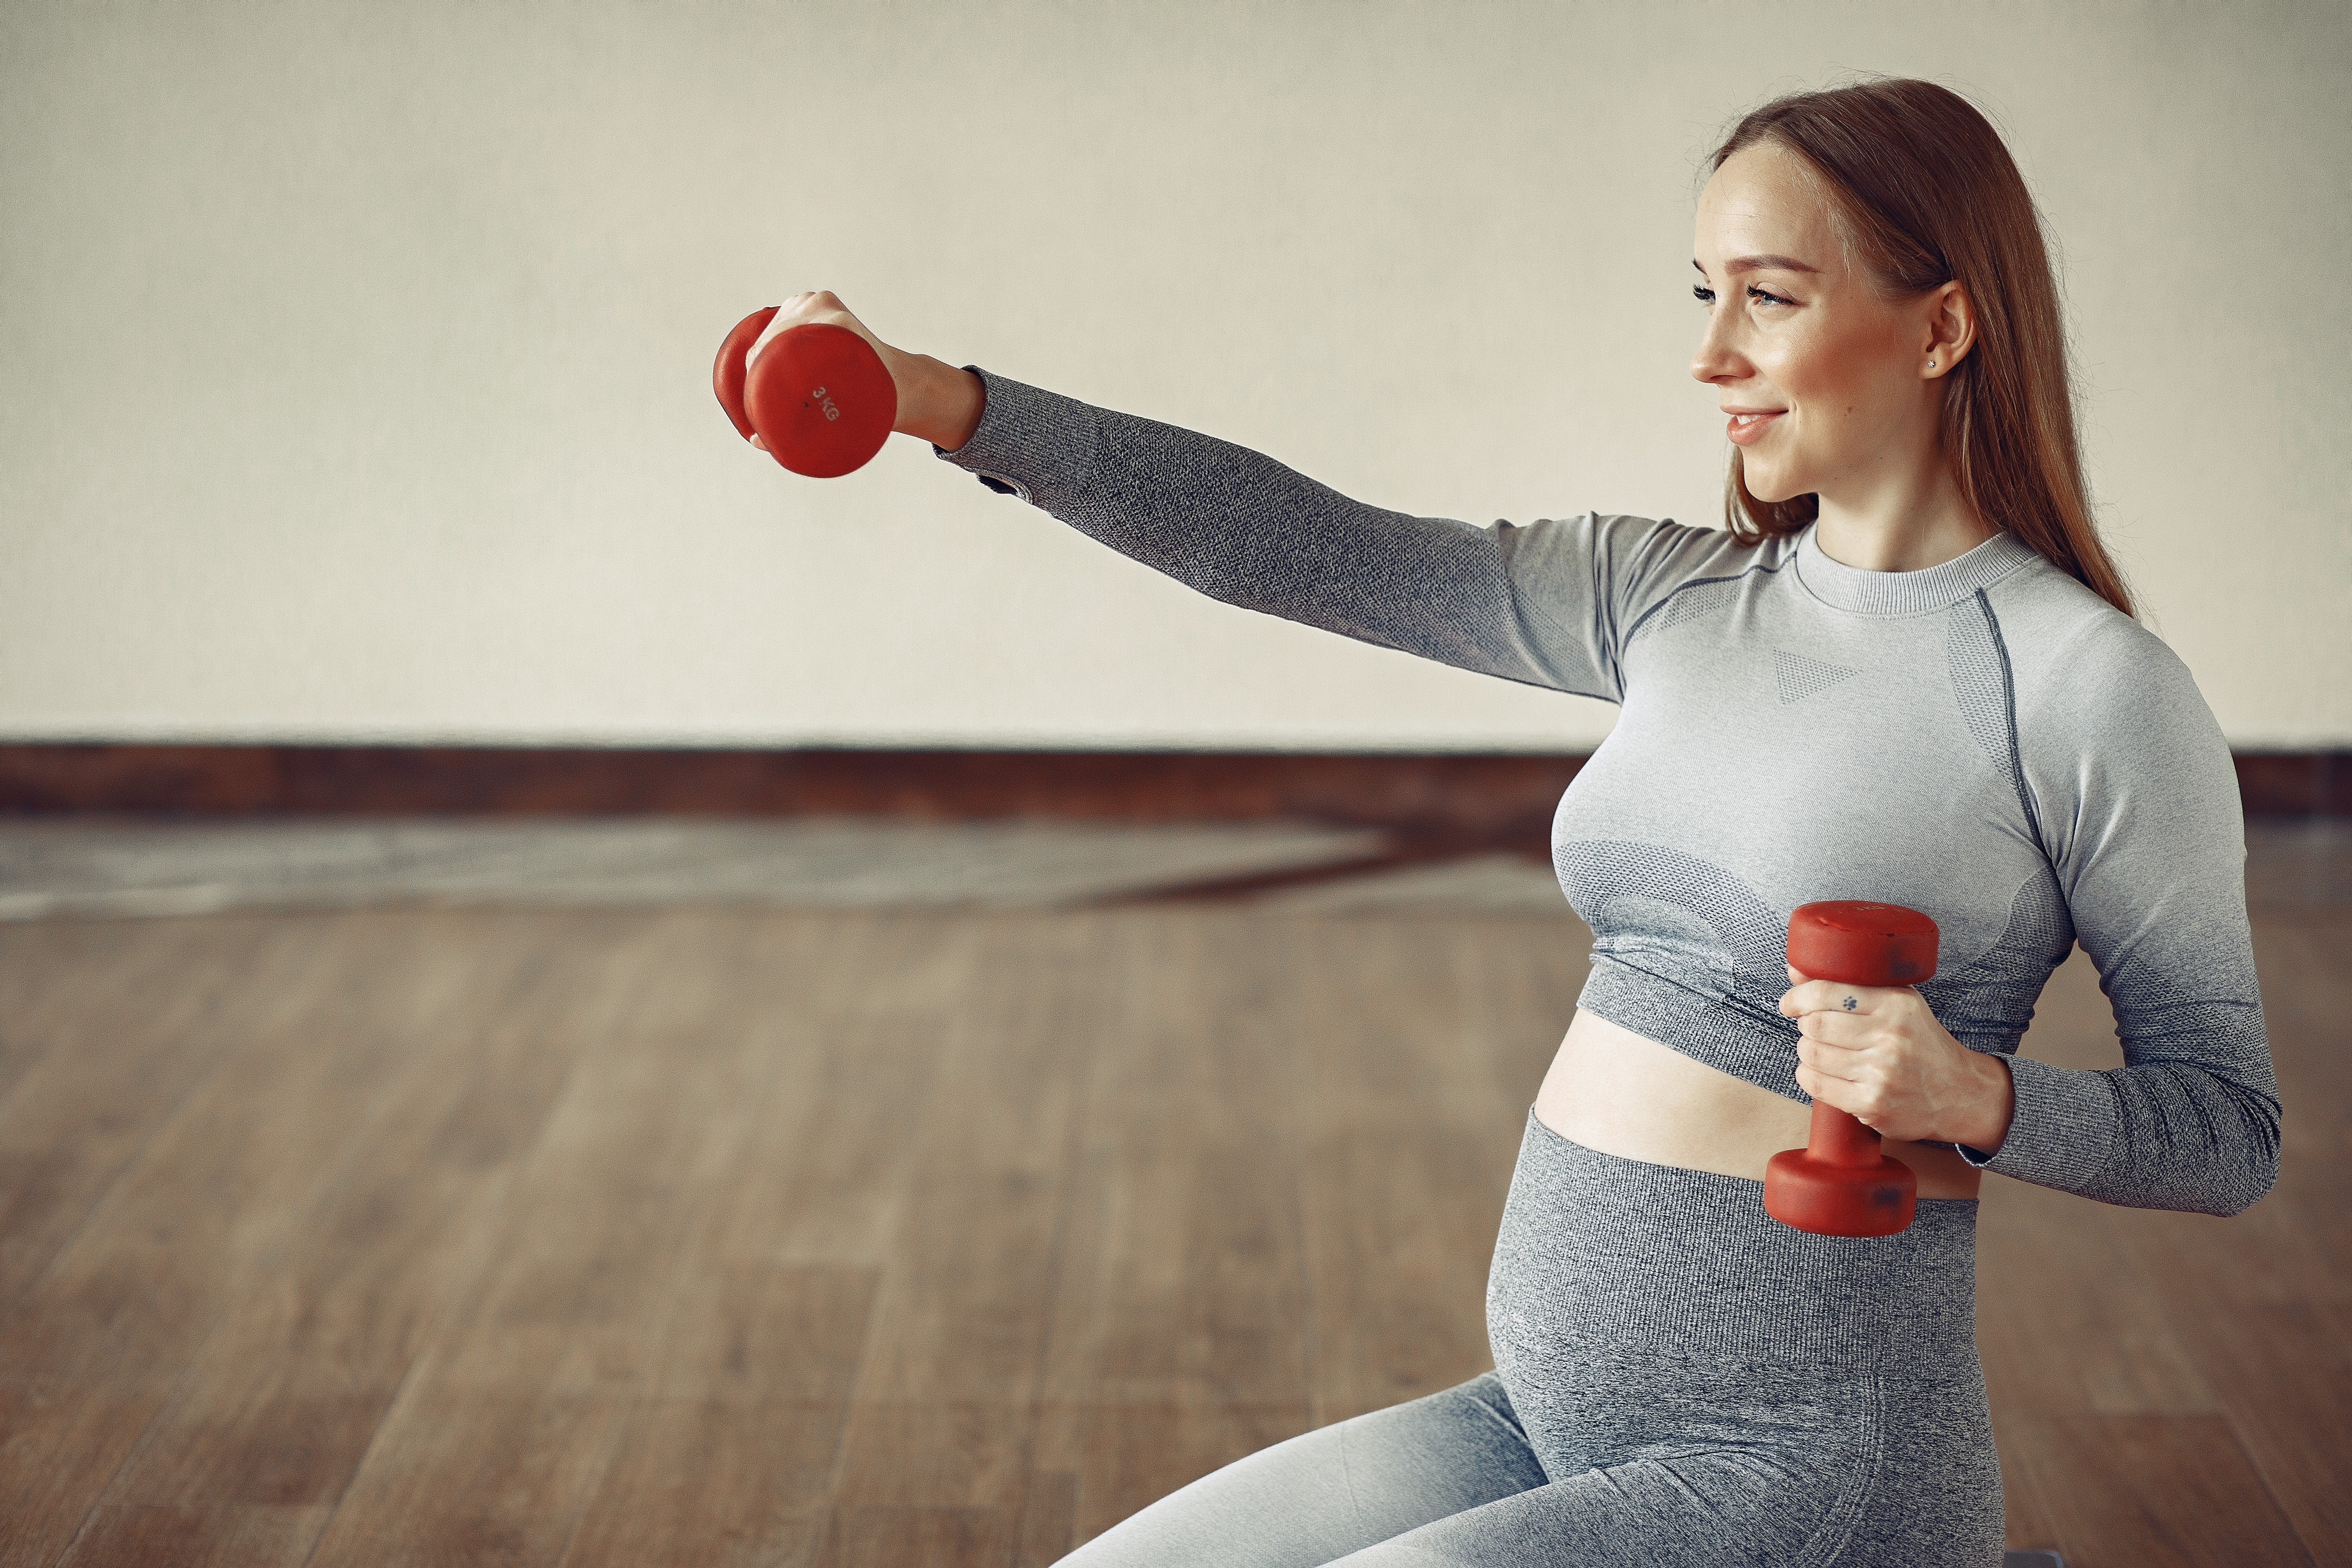 Planning de ejercicio físico según el tipo de parto